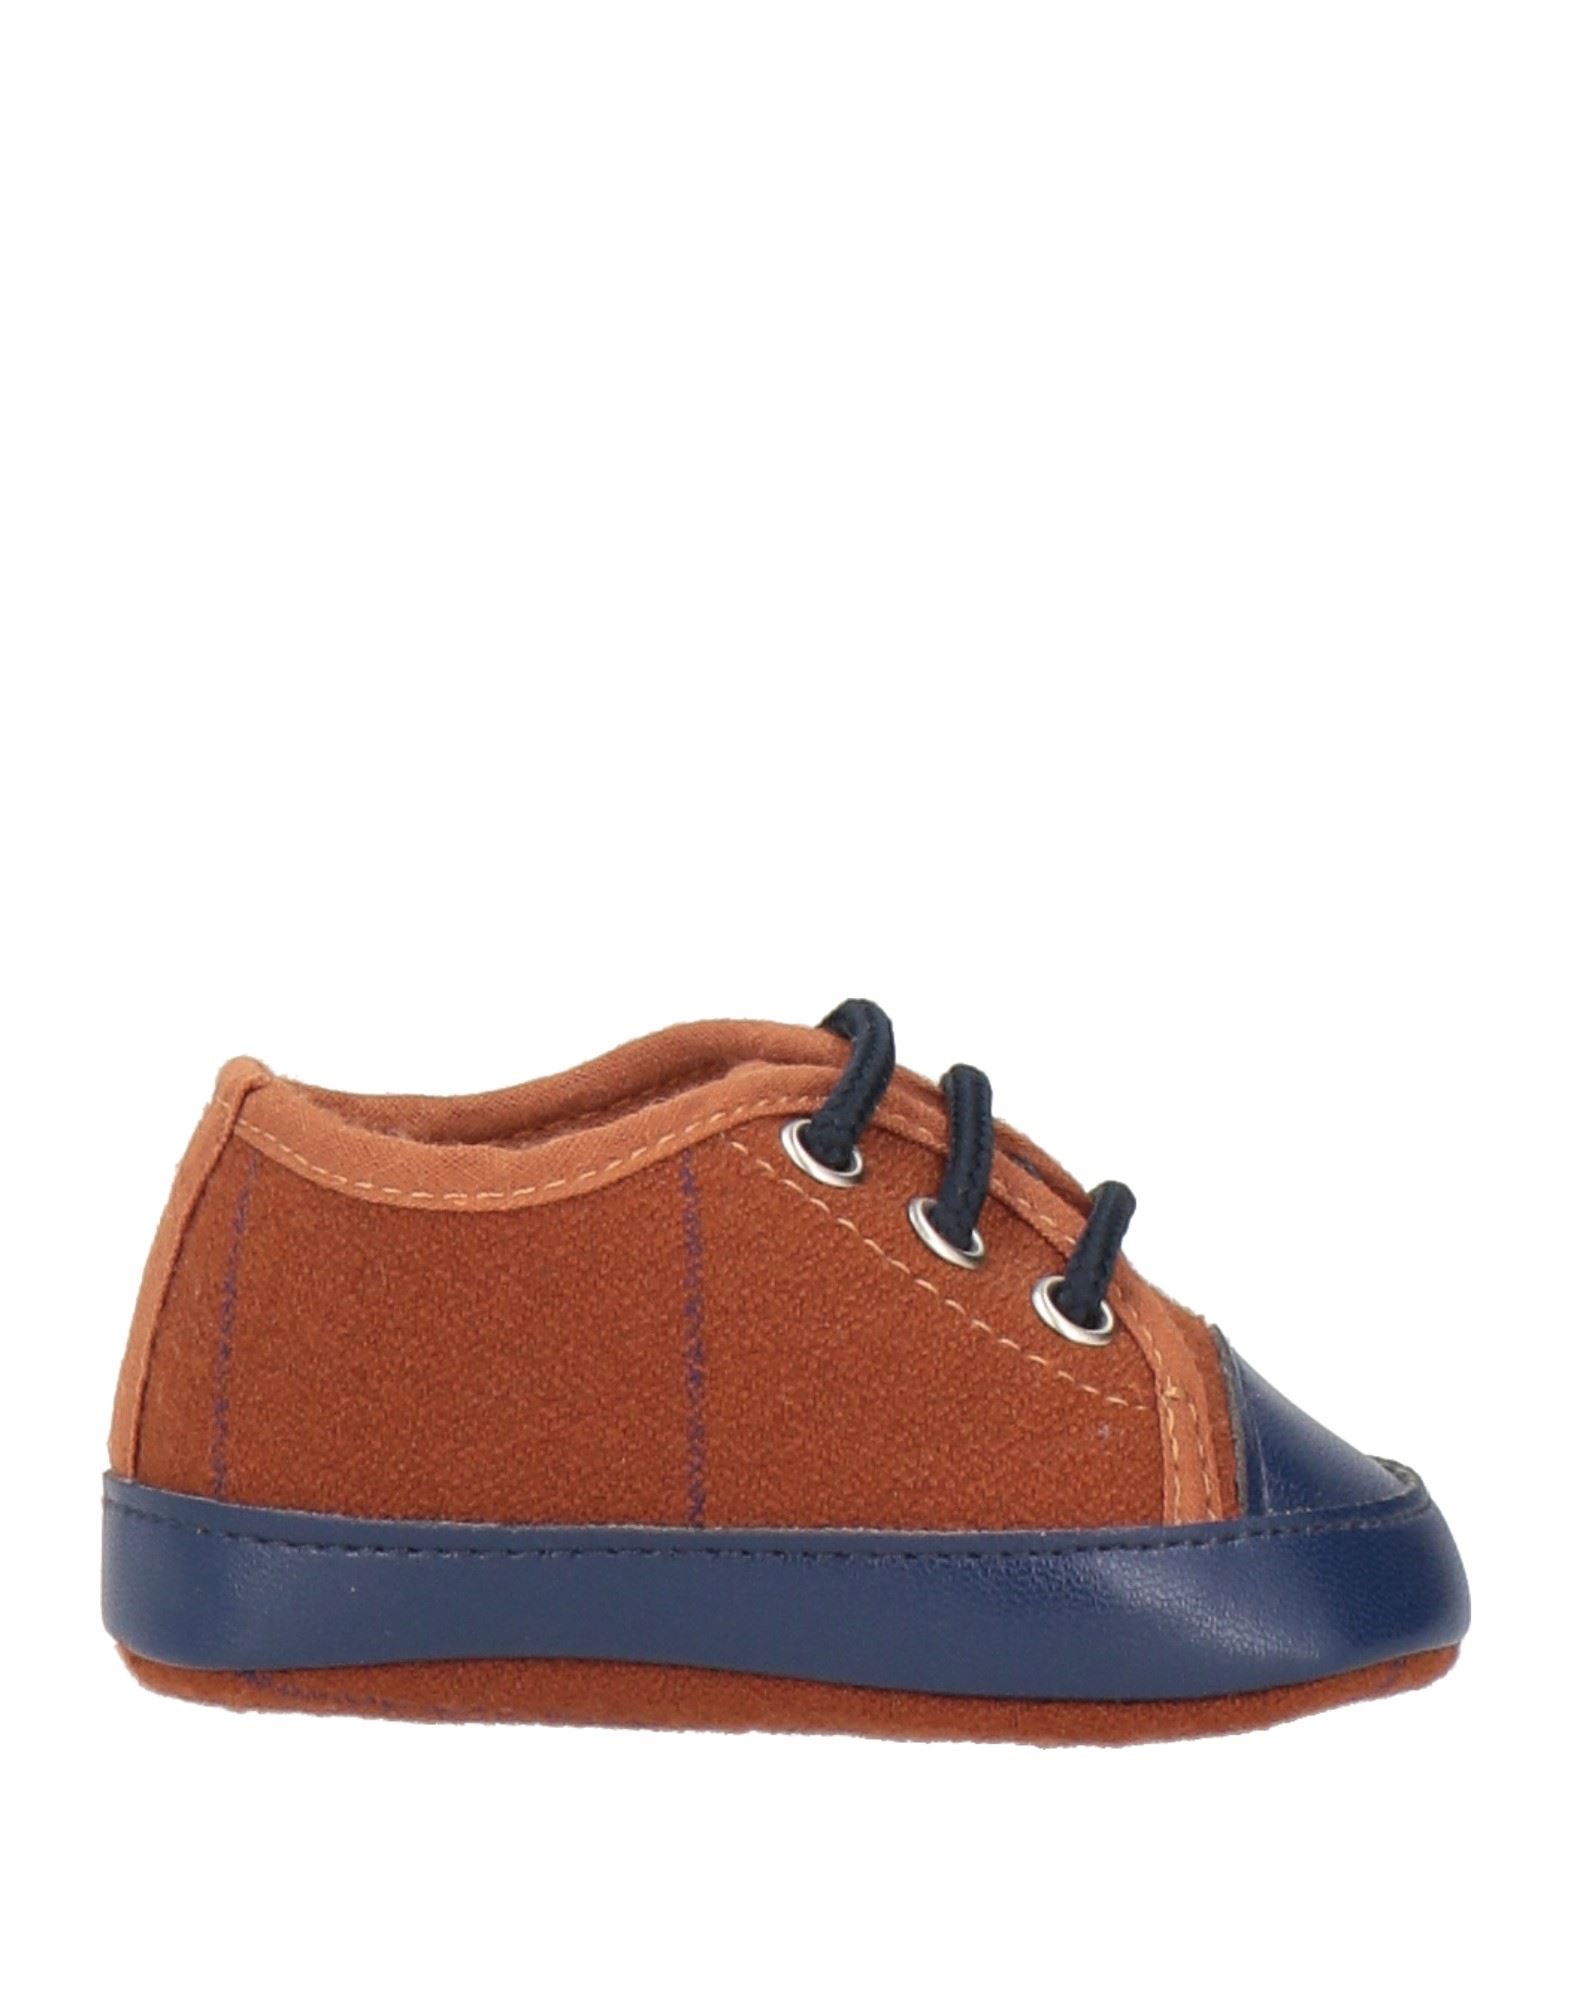 COLORICHIARI Schuhe Für Neugeborene Kinder Lederfarben von COLORICHIARI